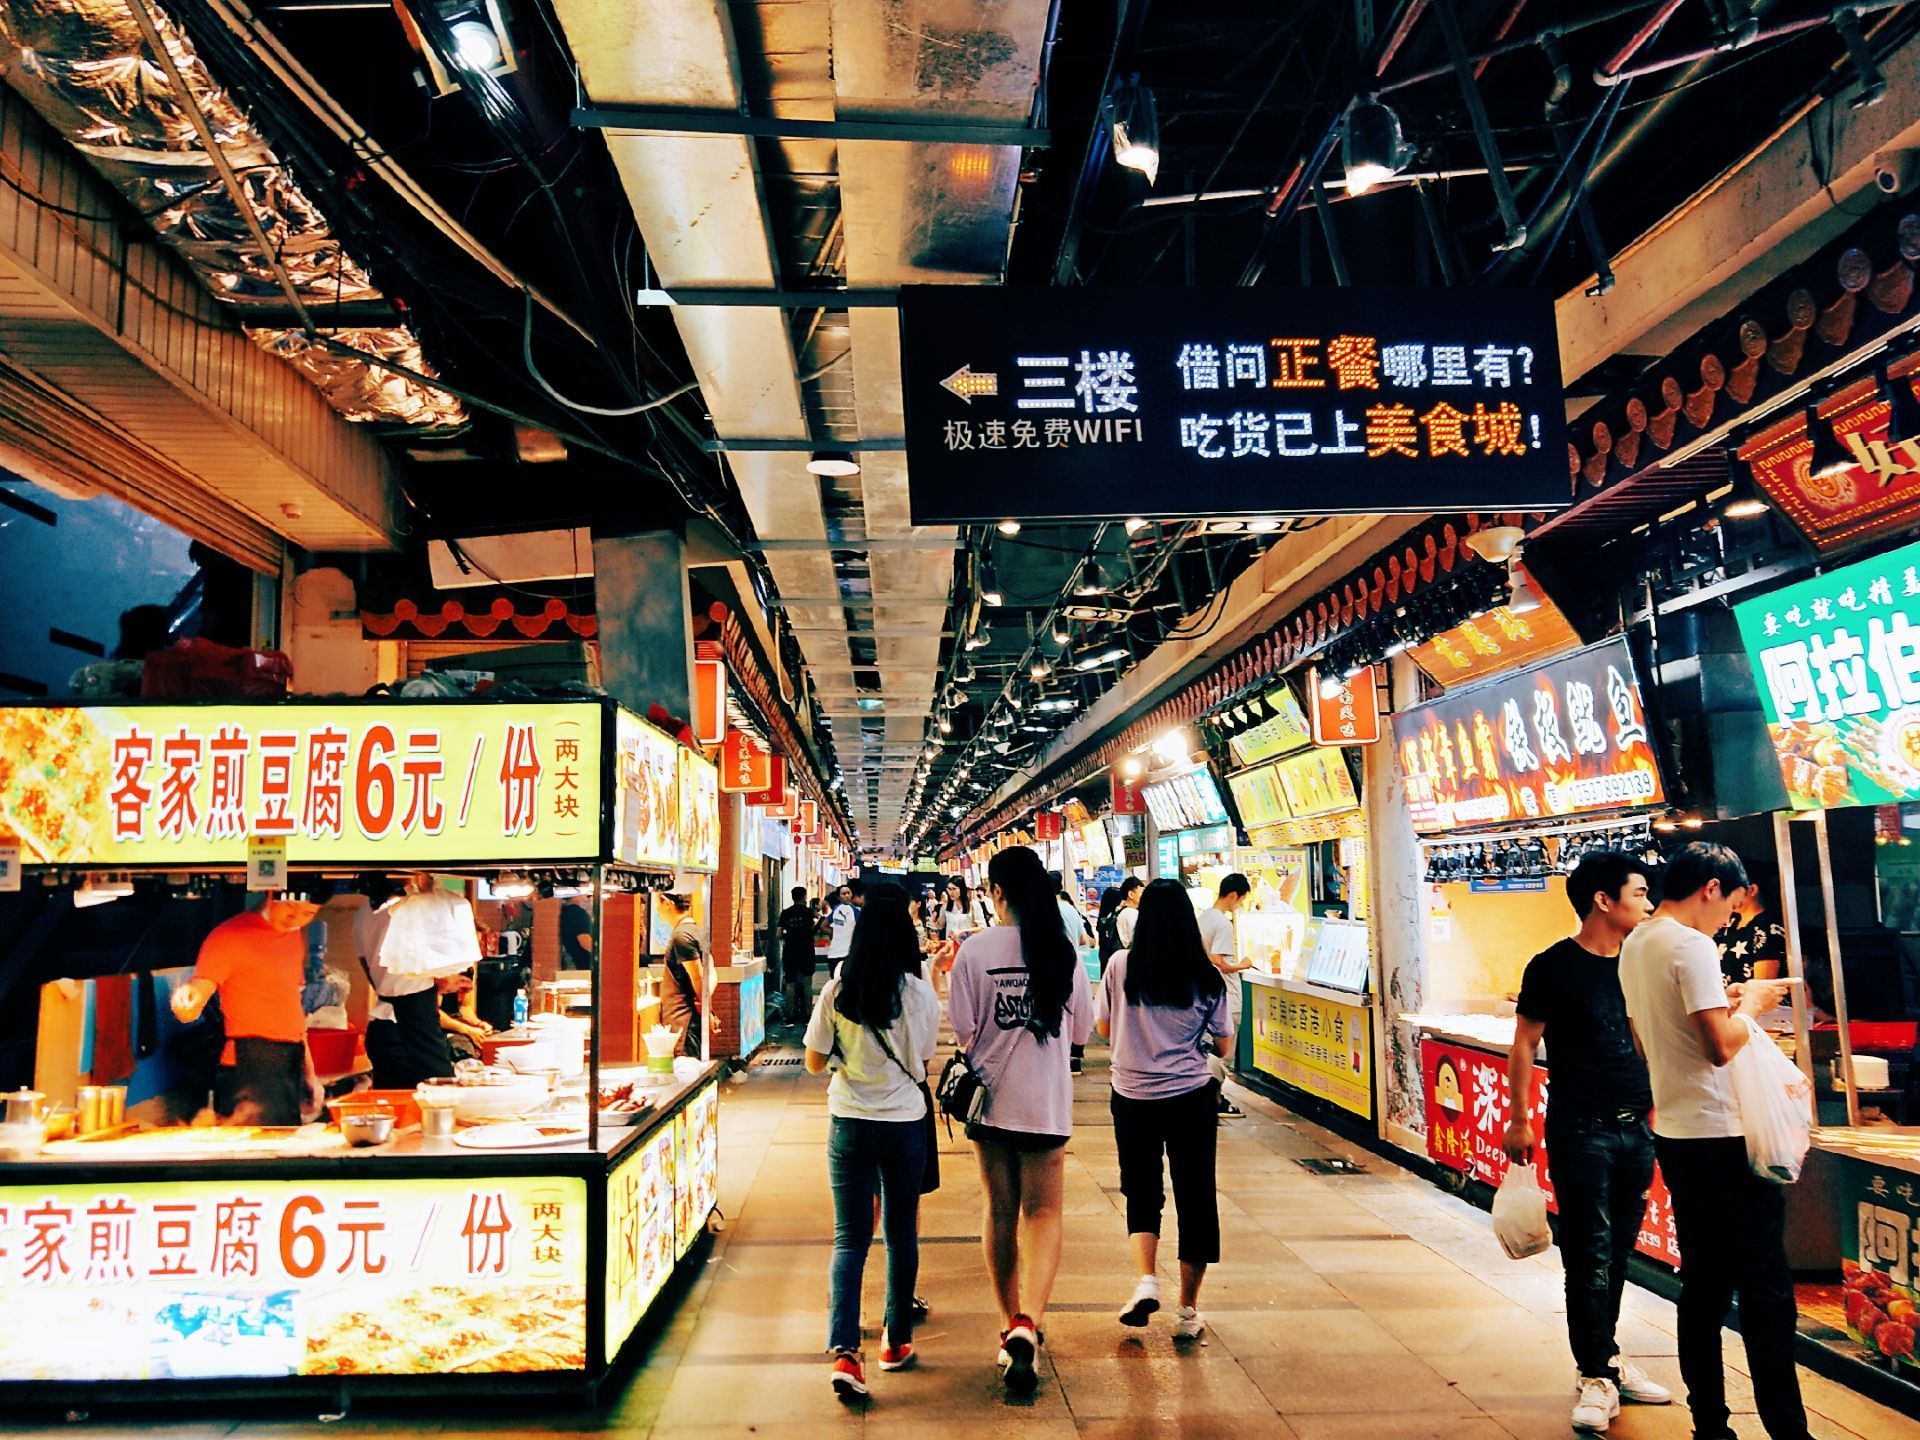 东门町美食街是位于深圳东门商业圈的热门小吃快餐